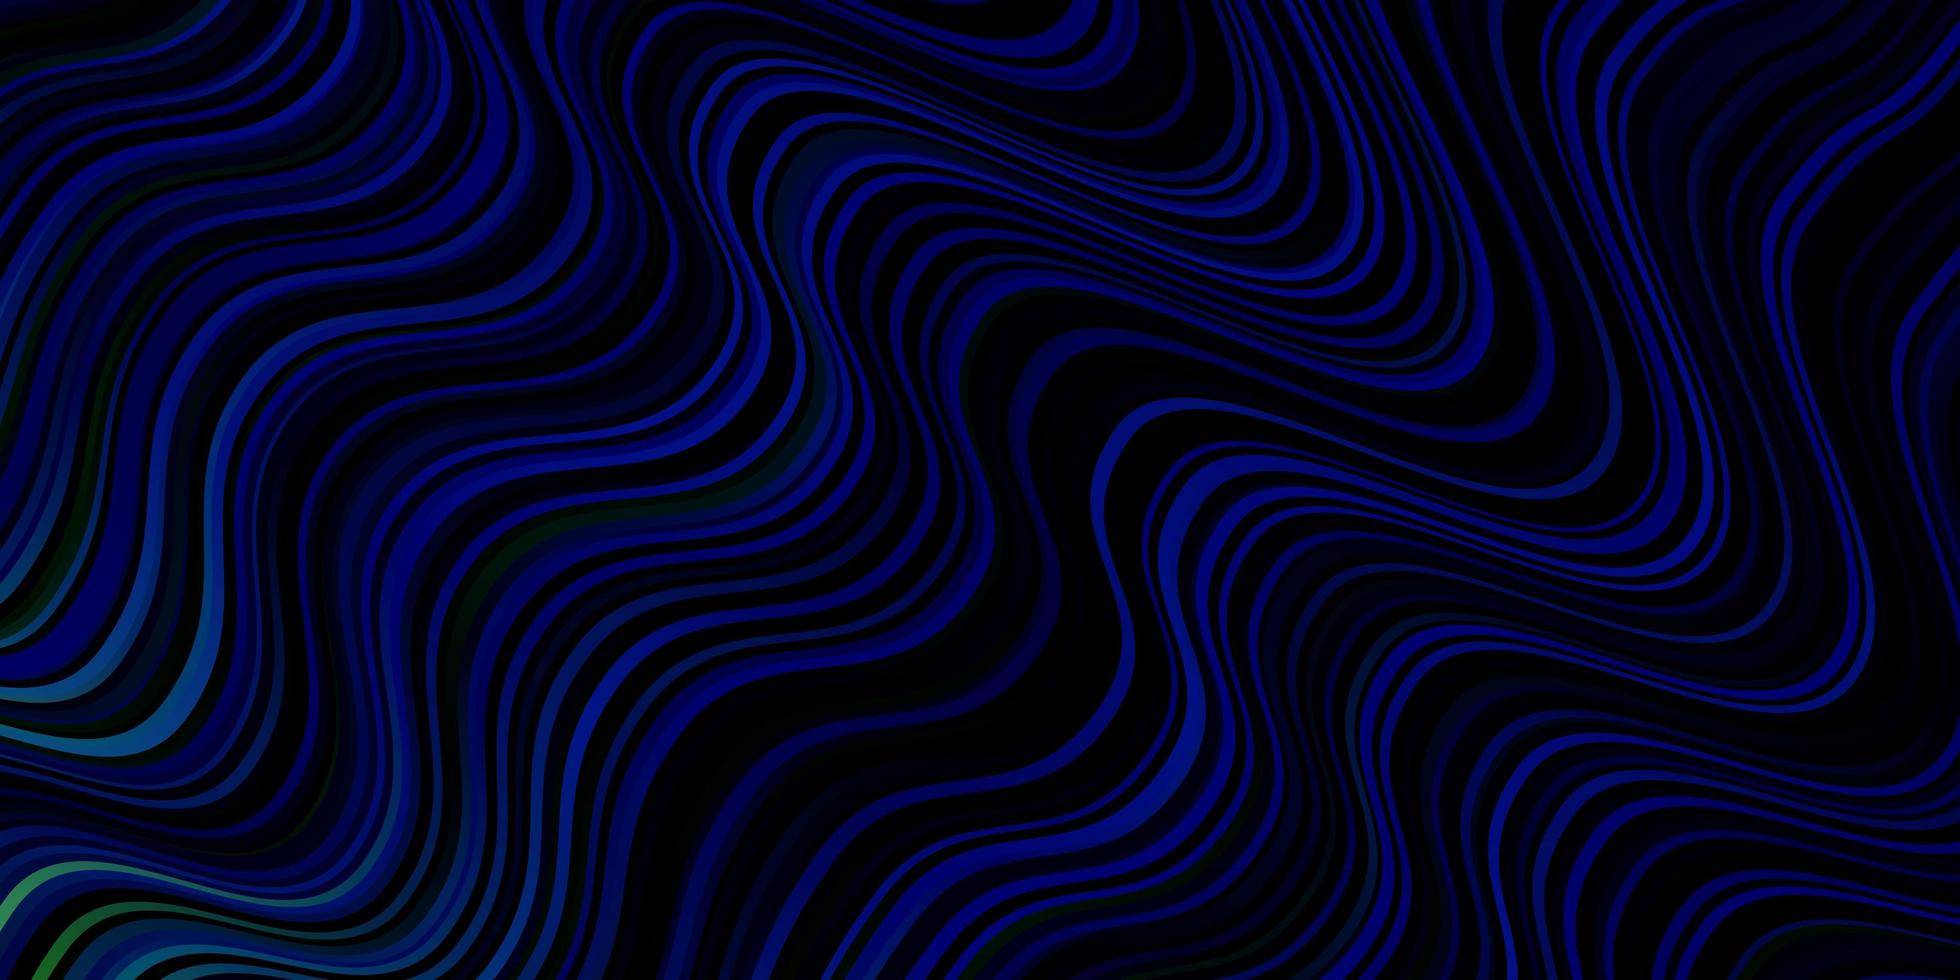 donkerblauwe, groene vectortextuur met rondingen. abstracte illustratie met gradiëntbogen. patroon voor websites, bestemmingspagina's. vector